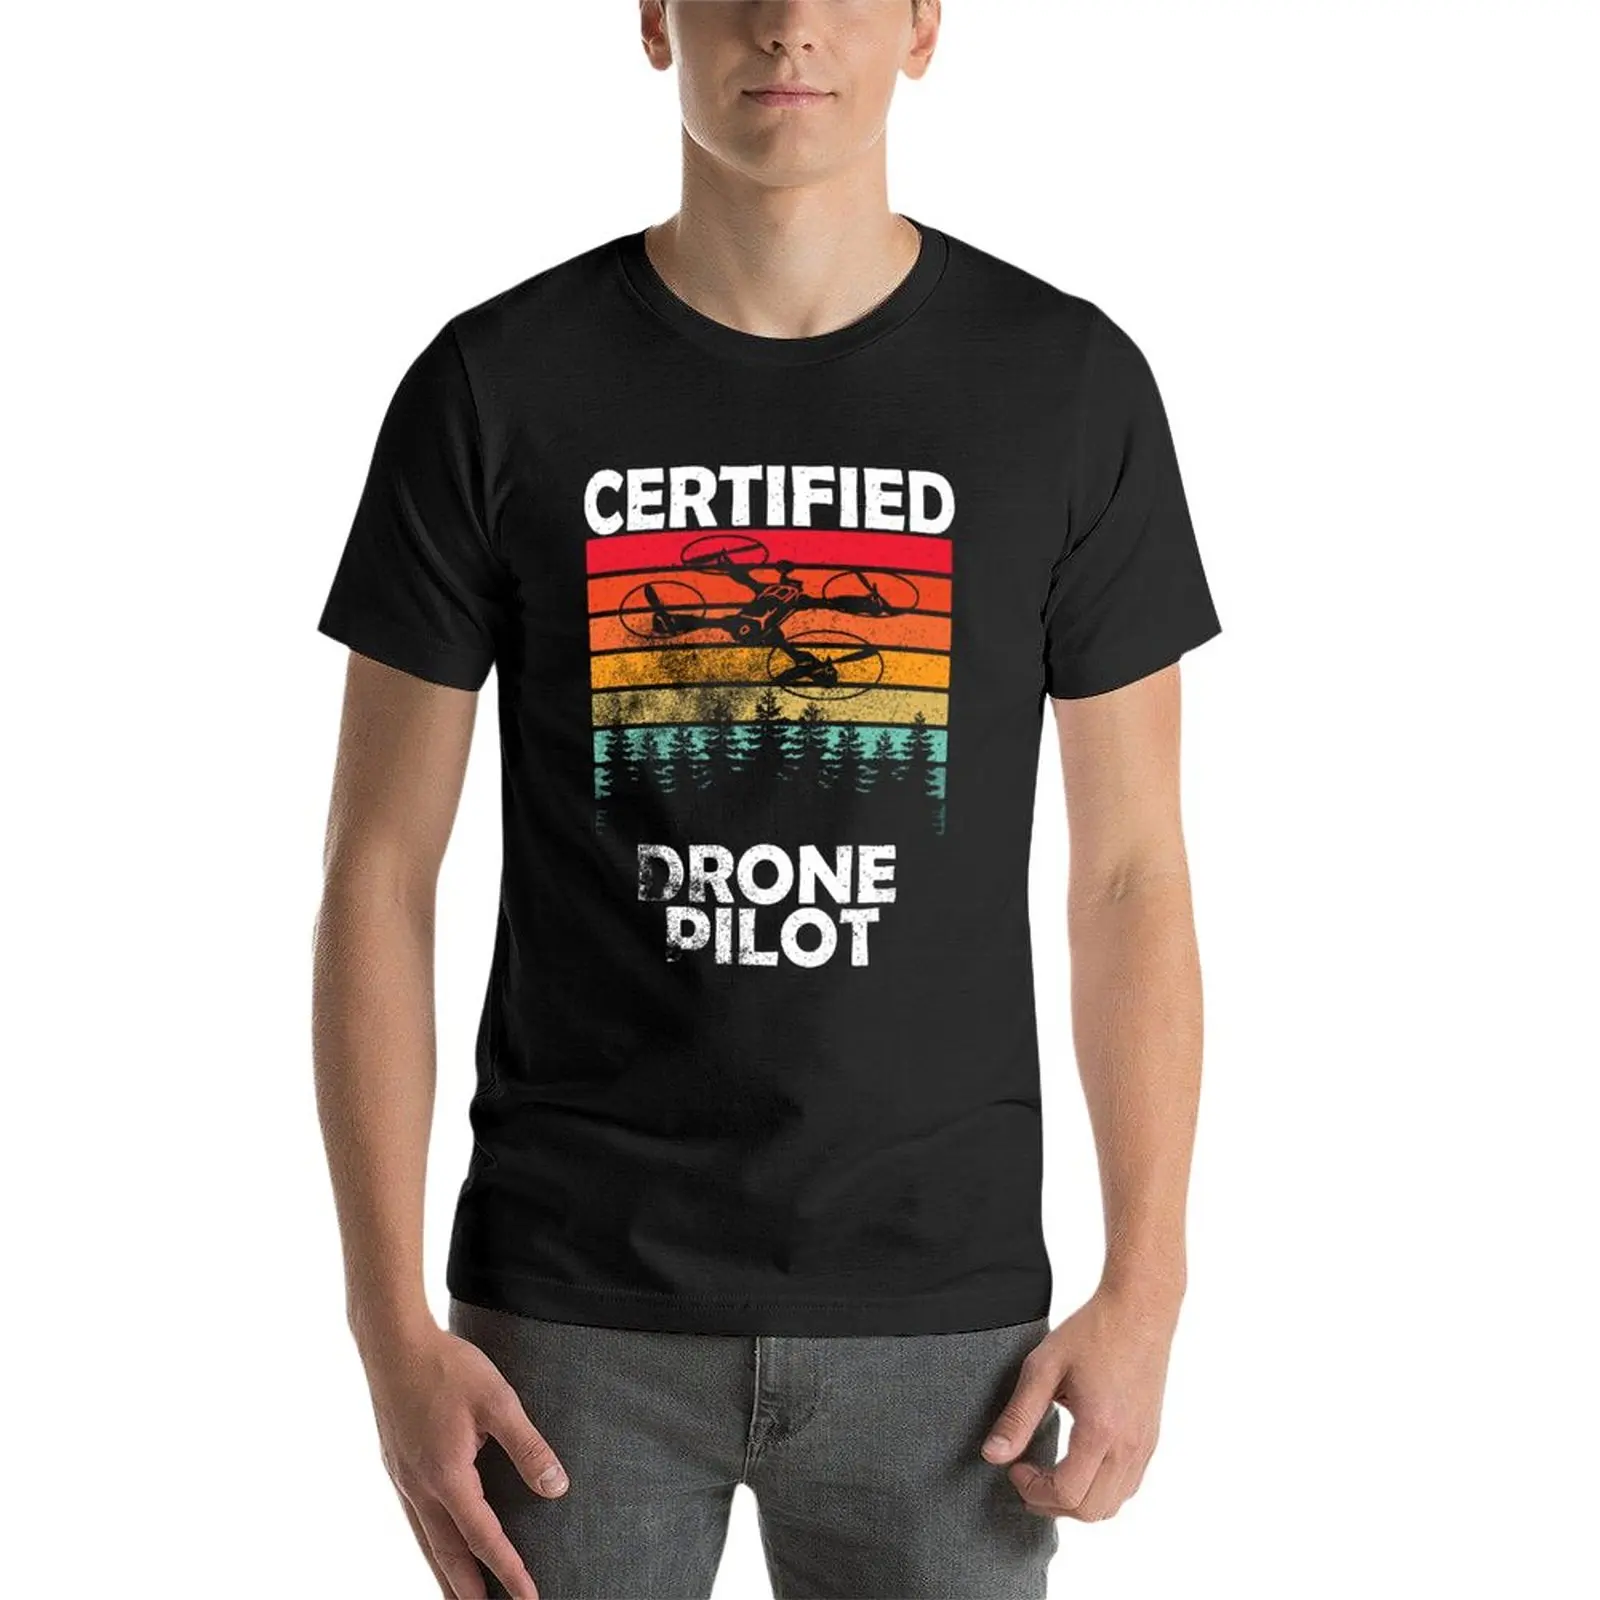 Новый сертифицированный беспилотный пилот, fpv-дрон, забавные футболки с дронами, футболки с графическим рисунком, одежда в стиле хиппи, футболки большого размера для мужчин